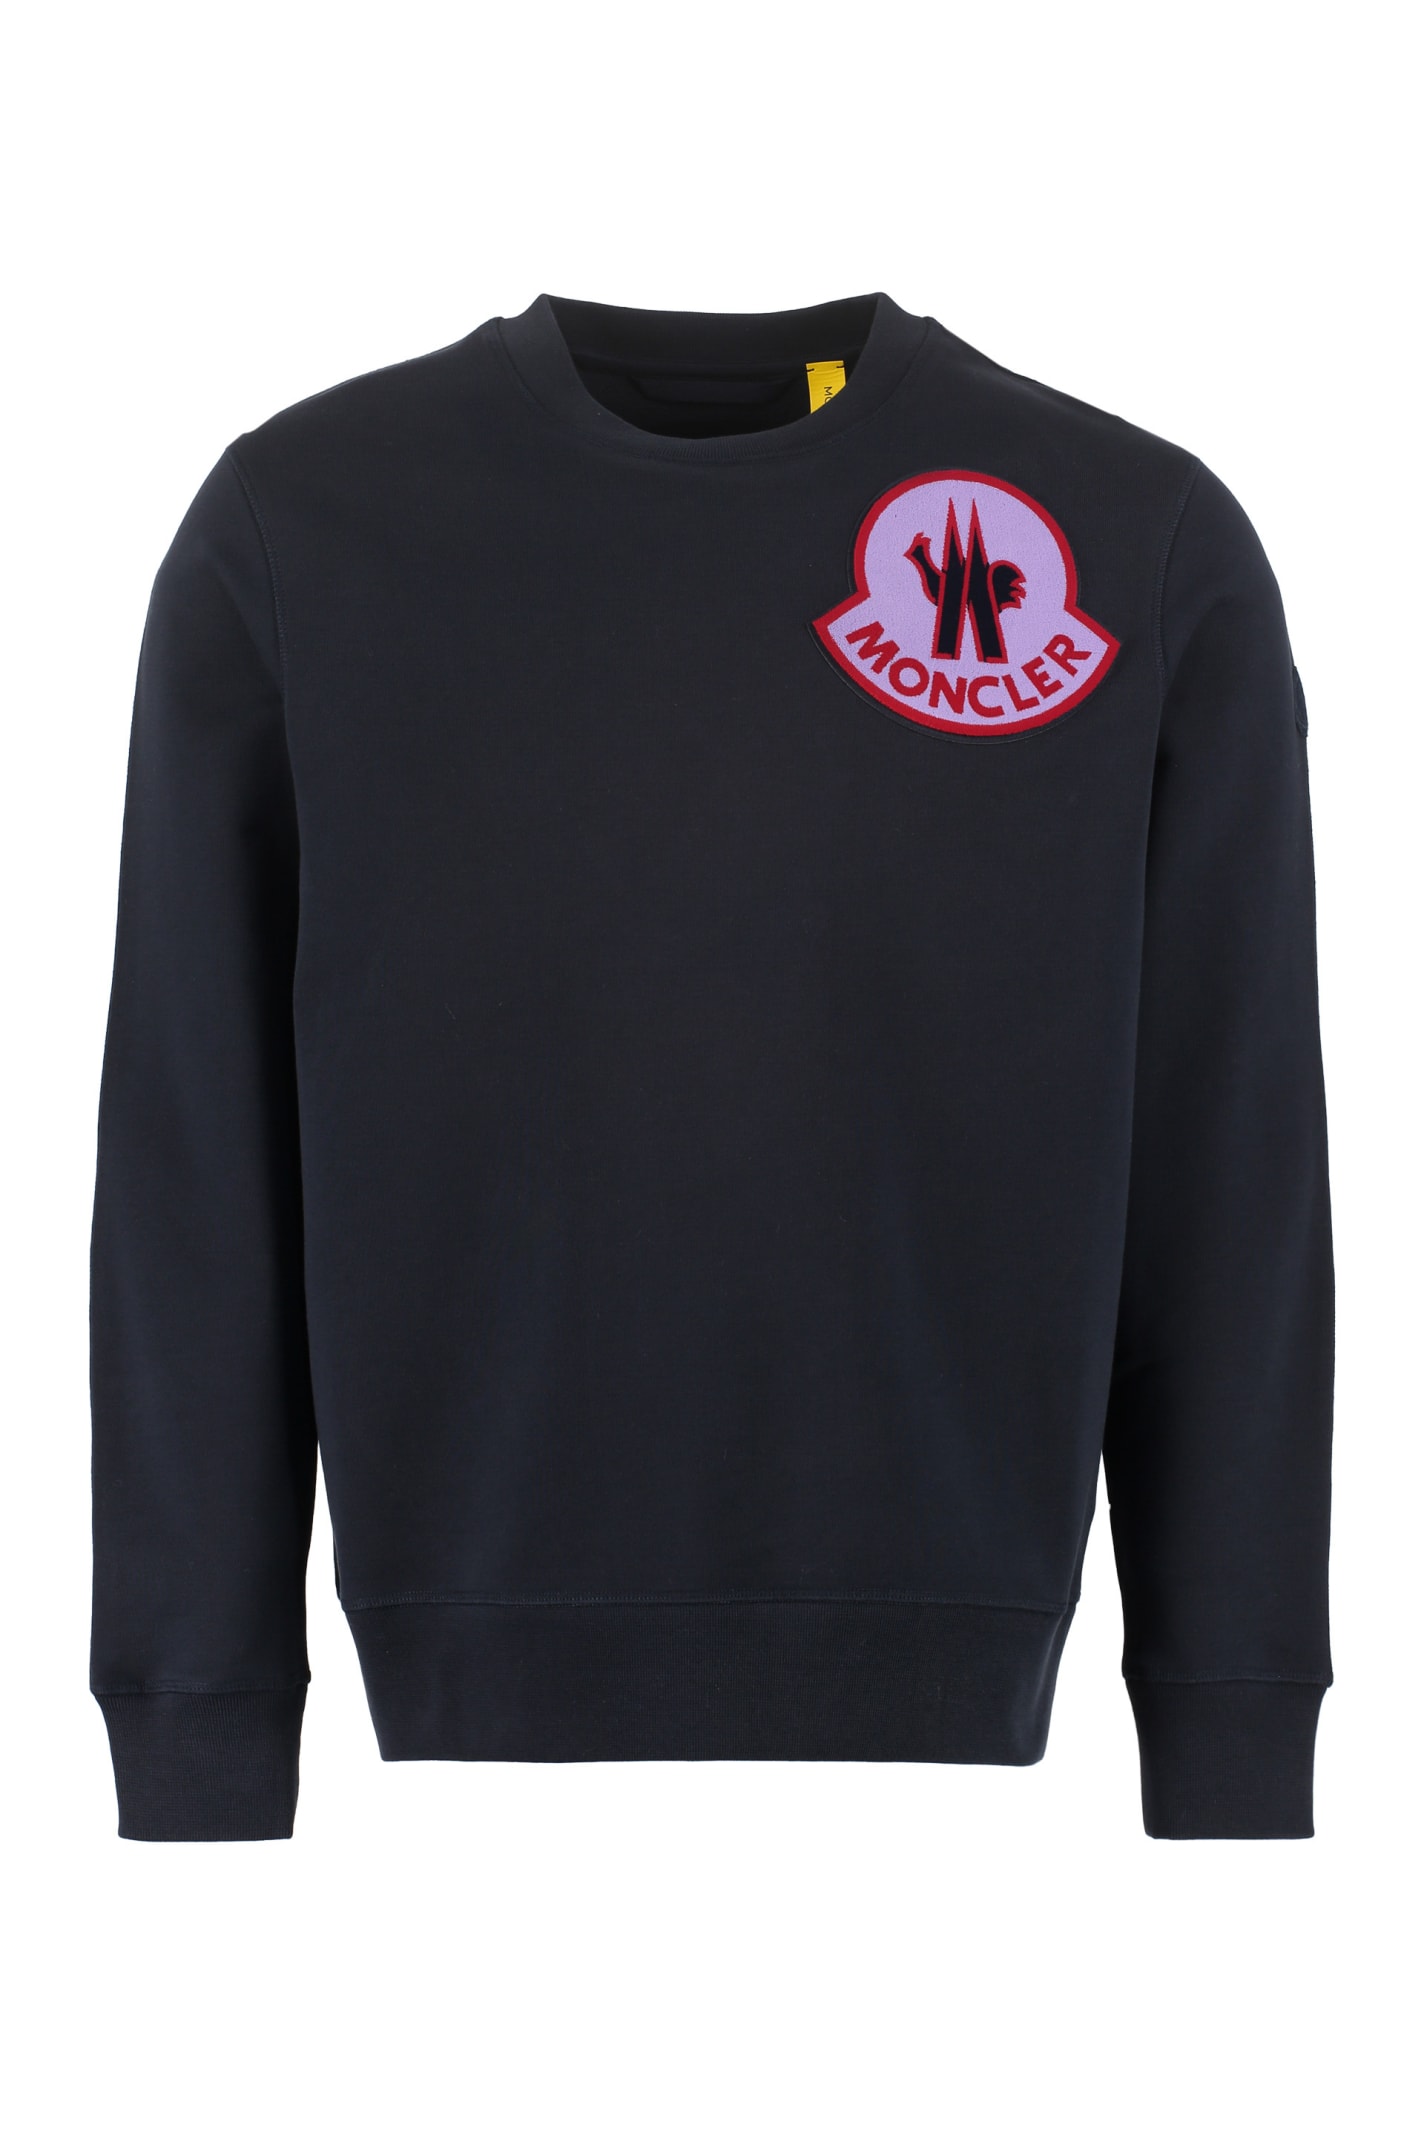 Moncler Genius 2 Moncler 1952 - Patch Sweatshirt